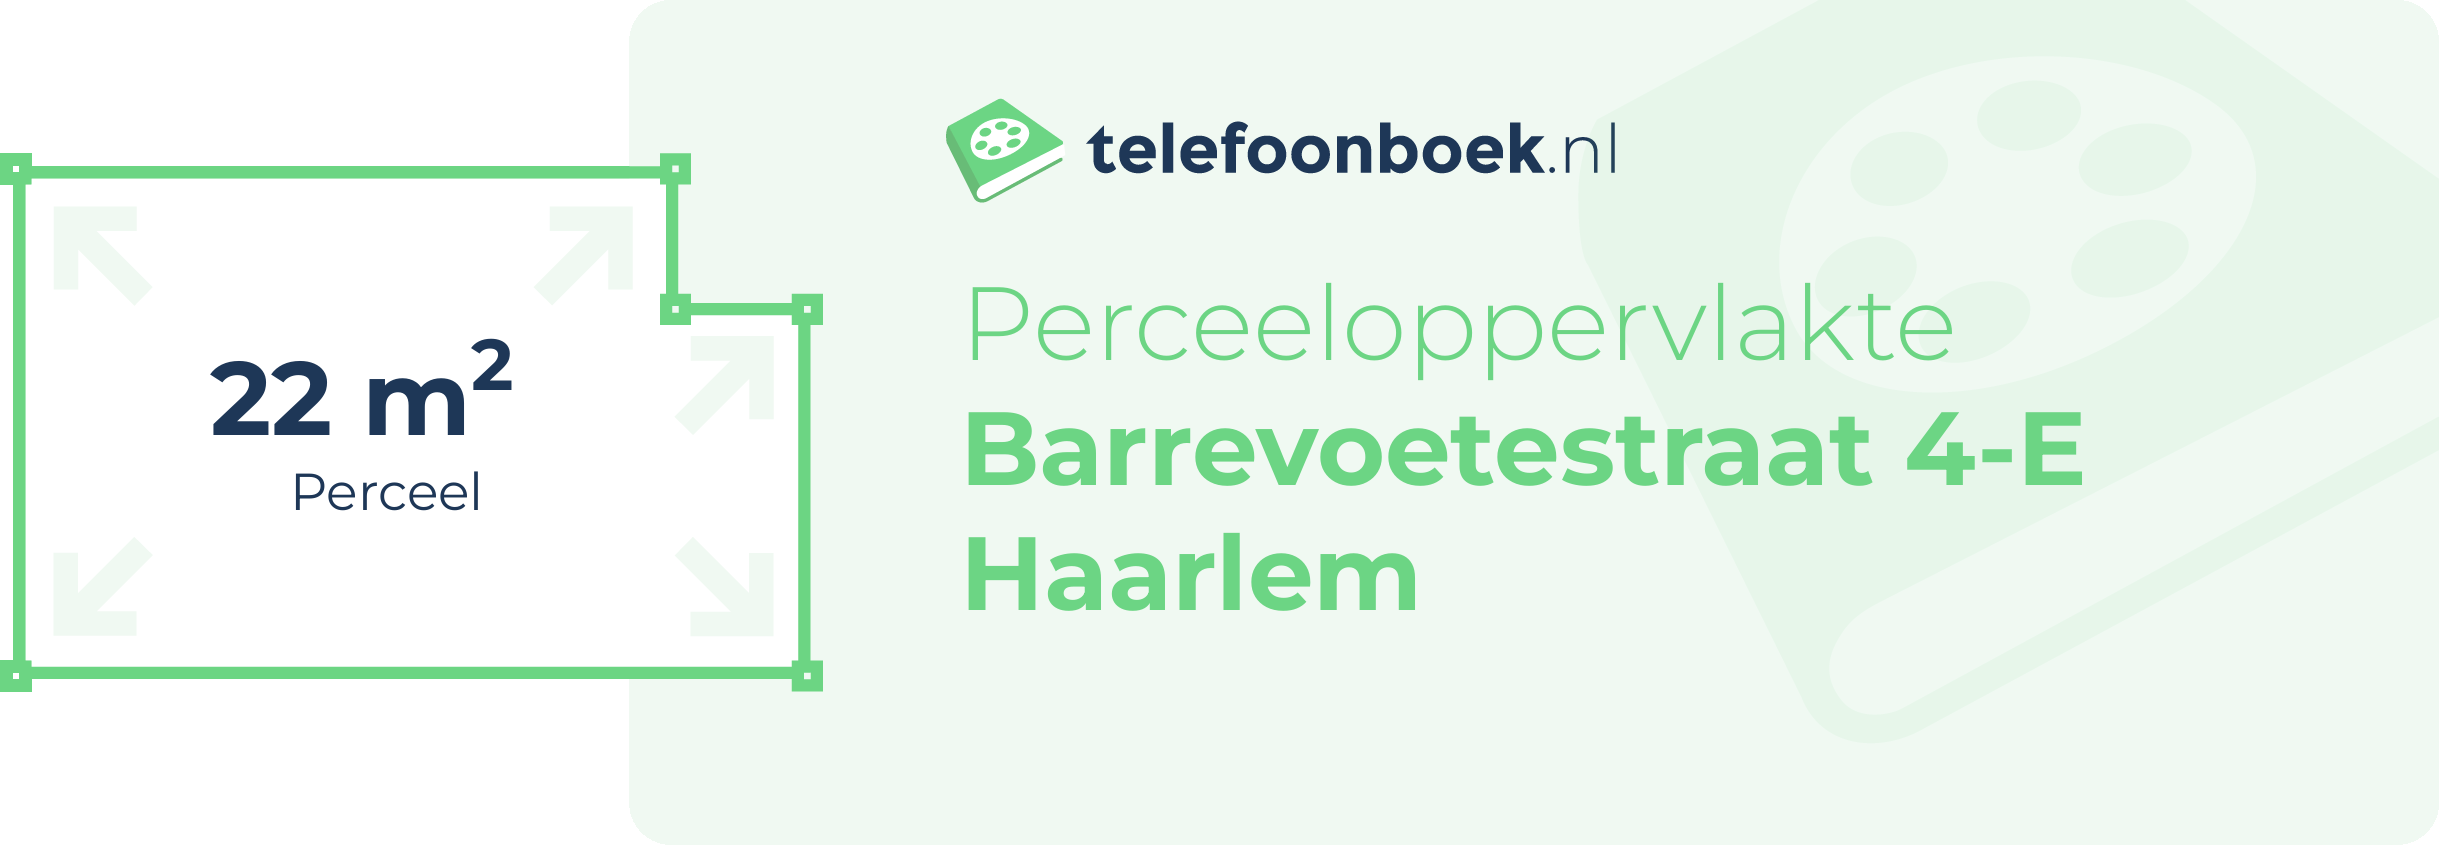 Perceeloppervlakte Barrevoetestraat 4-E Haarlem